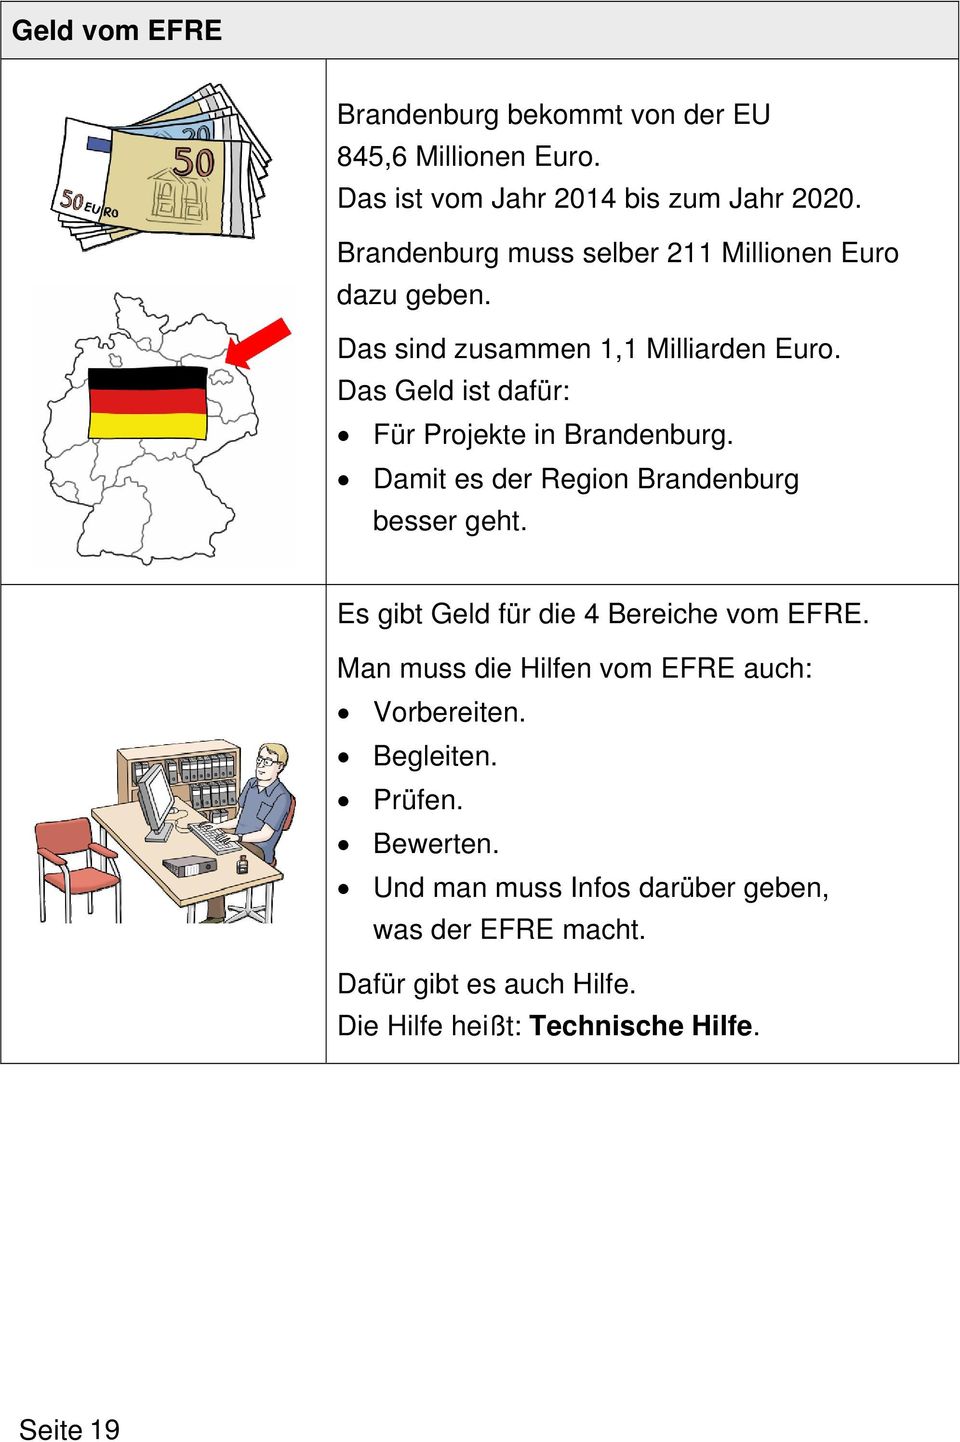 Das Geld ist dafür: Für Projekte in Brandenburg. Damit es der Region Brandenburg besser geht. Es gibt Geld für die 4 Bereiche vom EFRE.